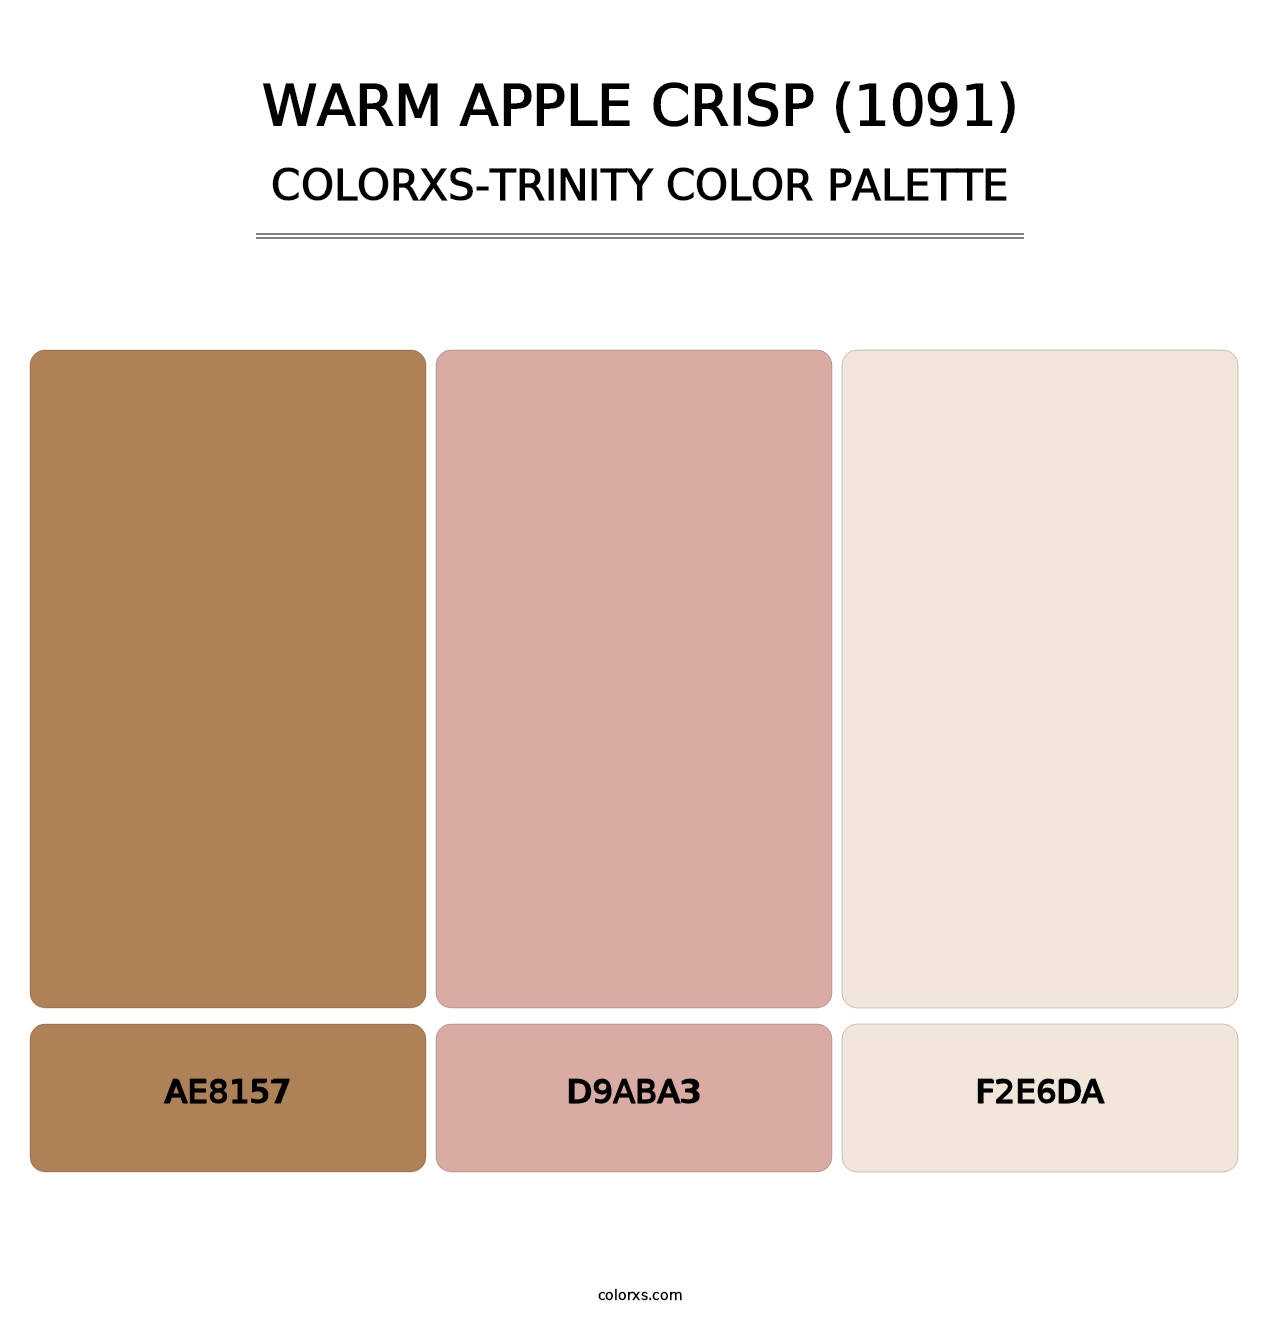 Warm Apple Crisp (1091) - Colorxs Trinity Palette